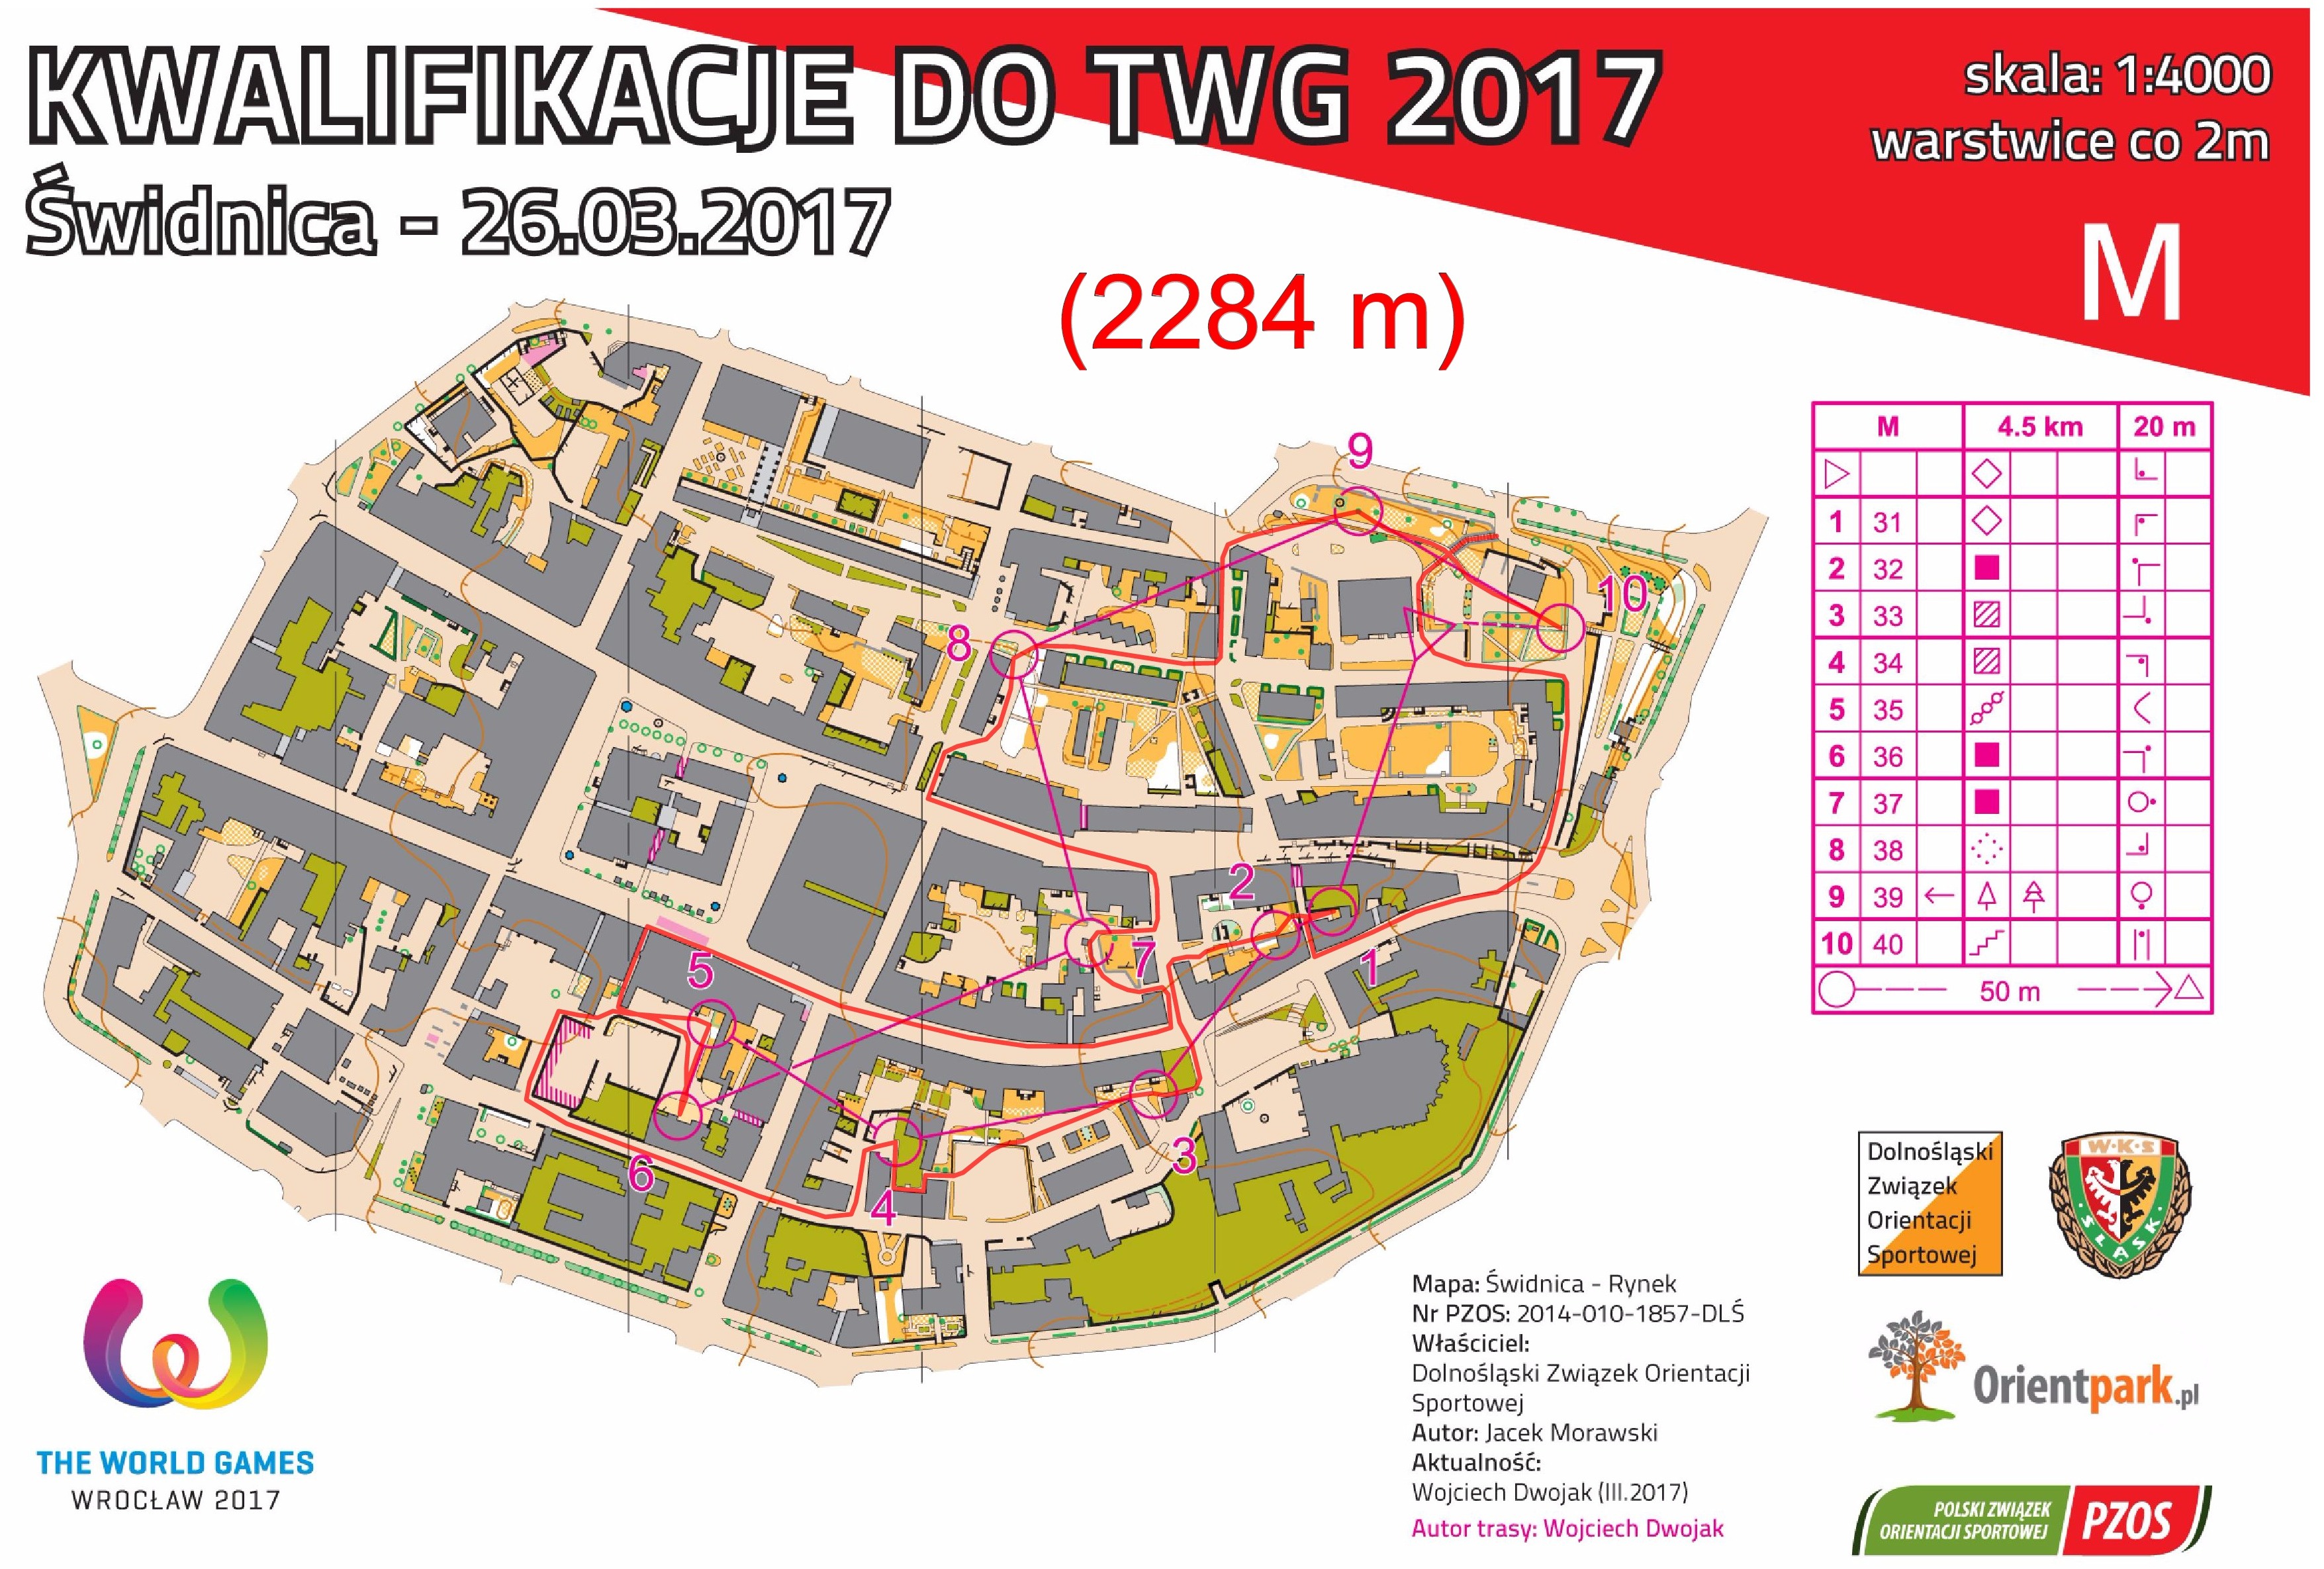 kwalifikacje do TWG - sprint #2, cz. I (26.03.2017)